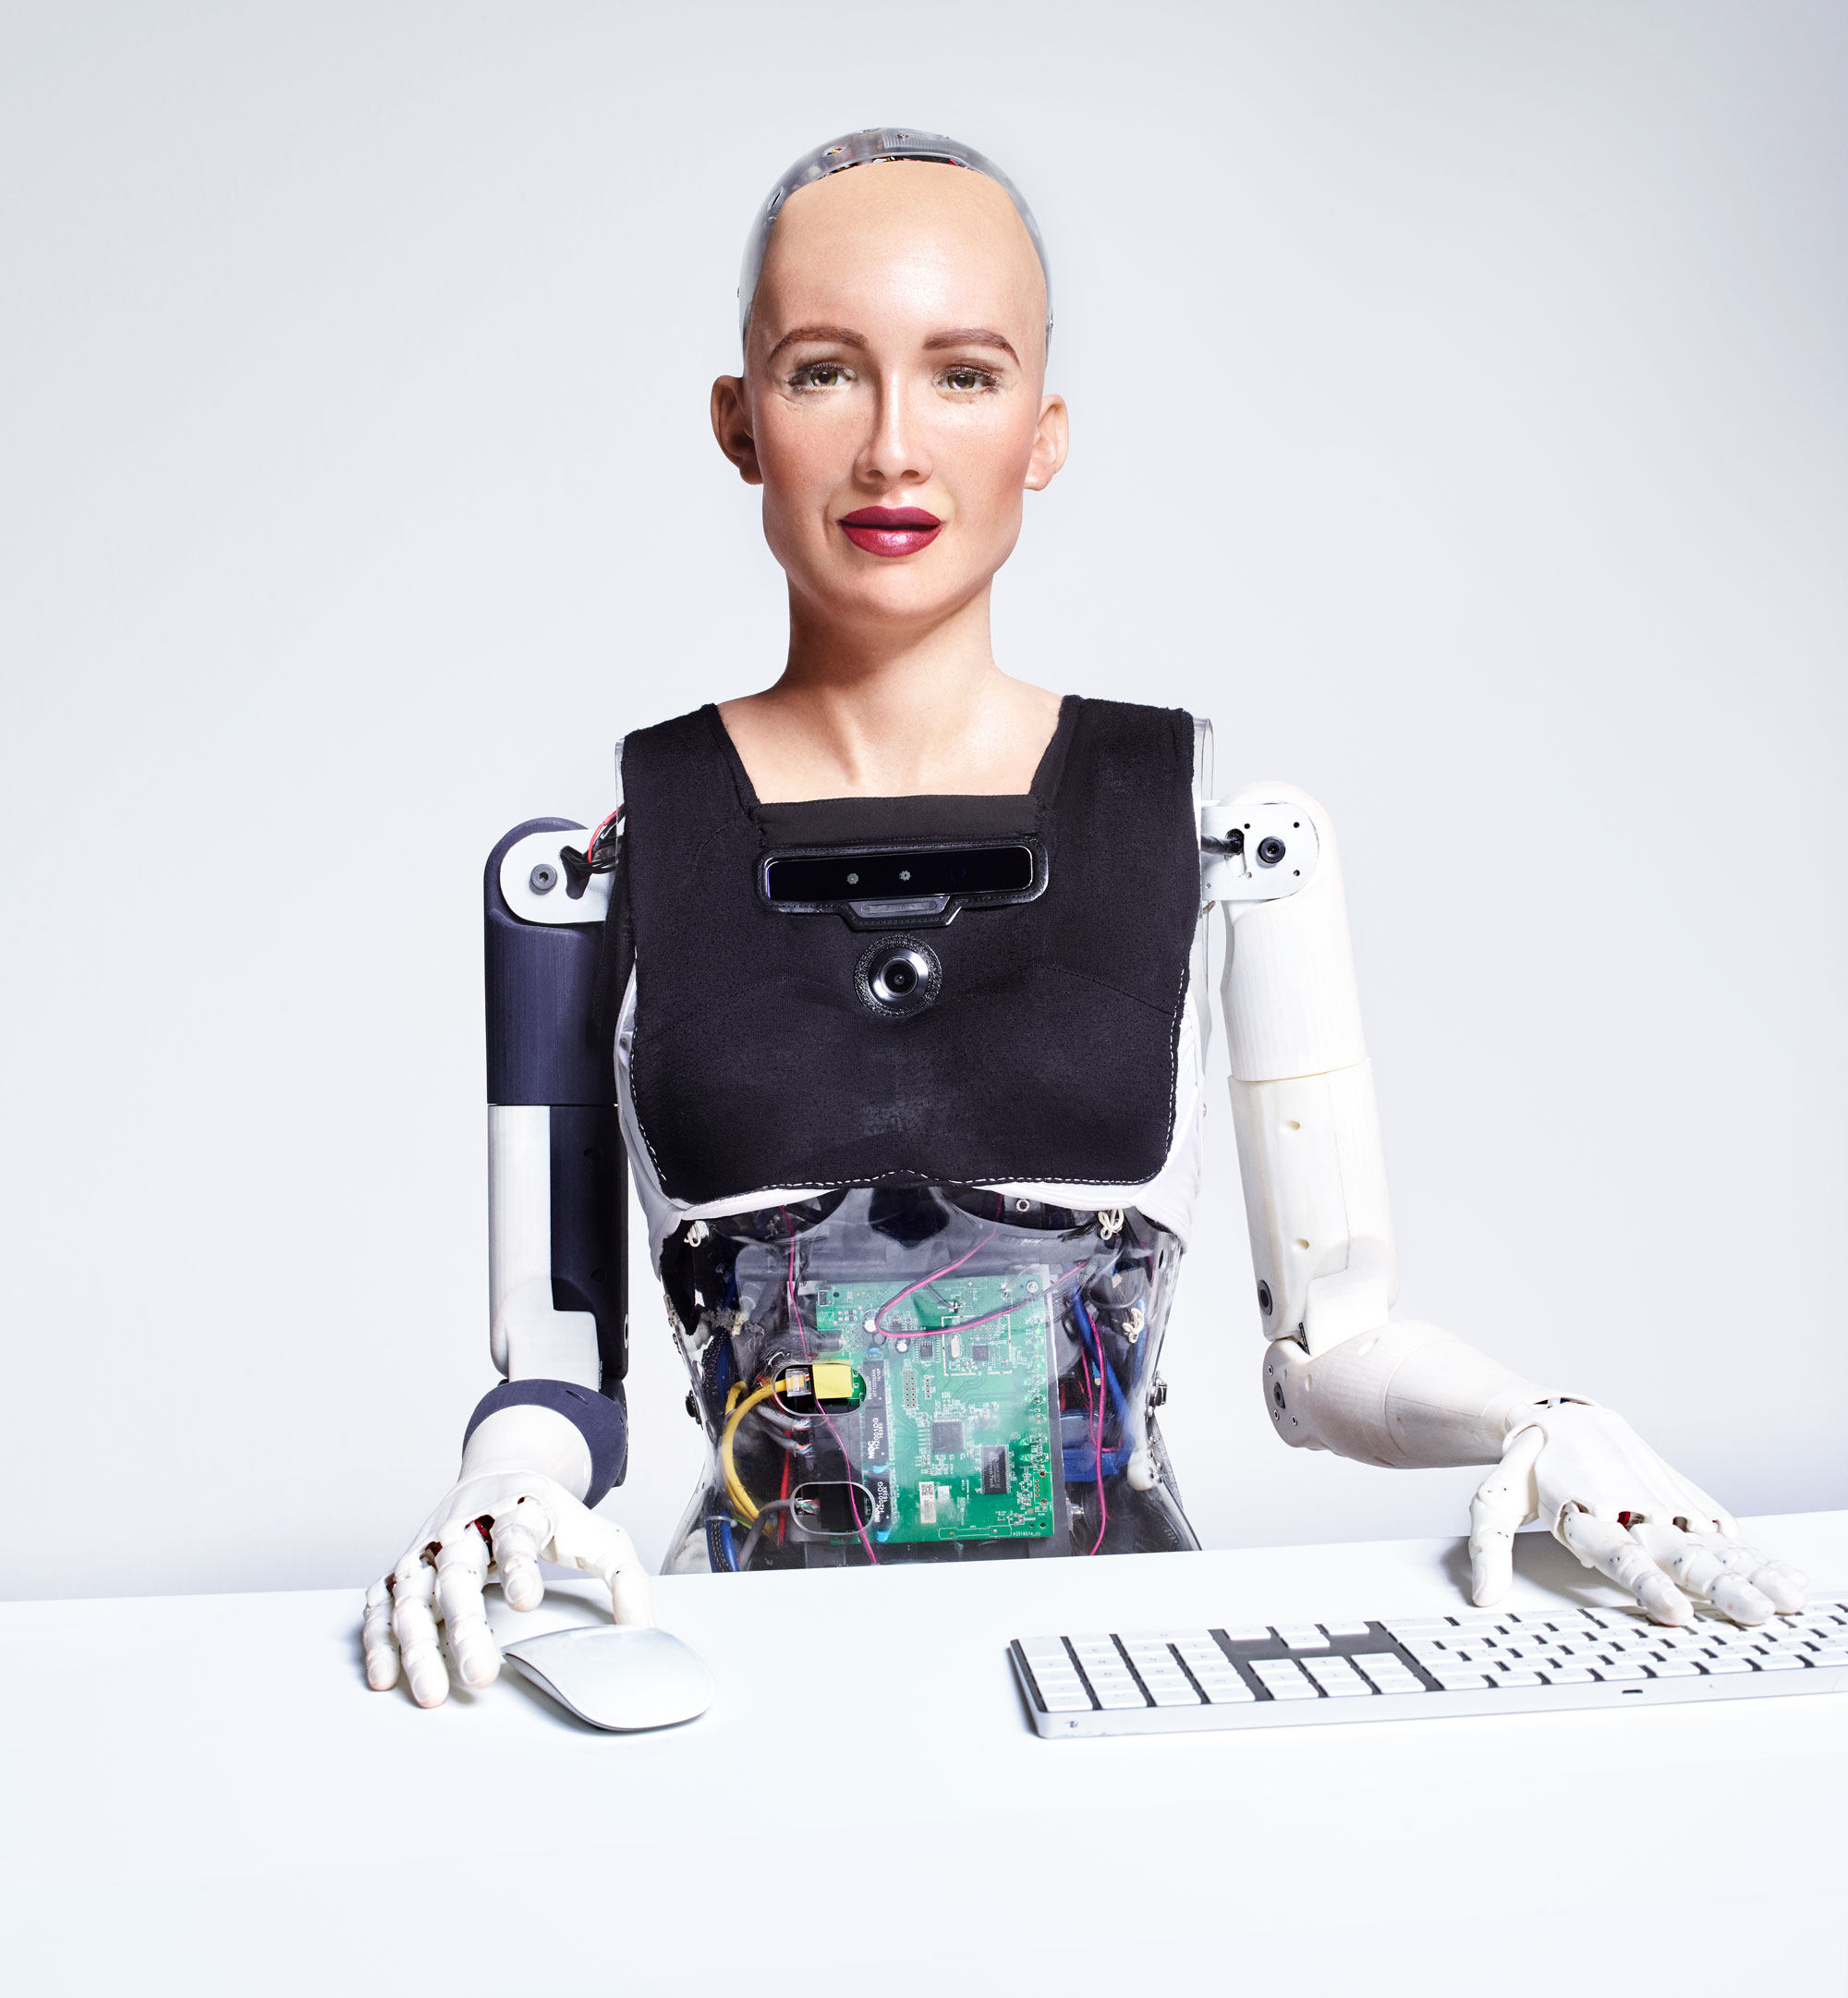 Le robot Sophia de la société Hanson robotics